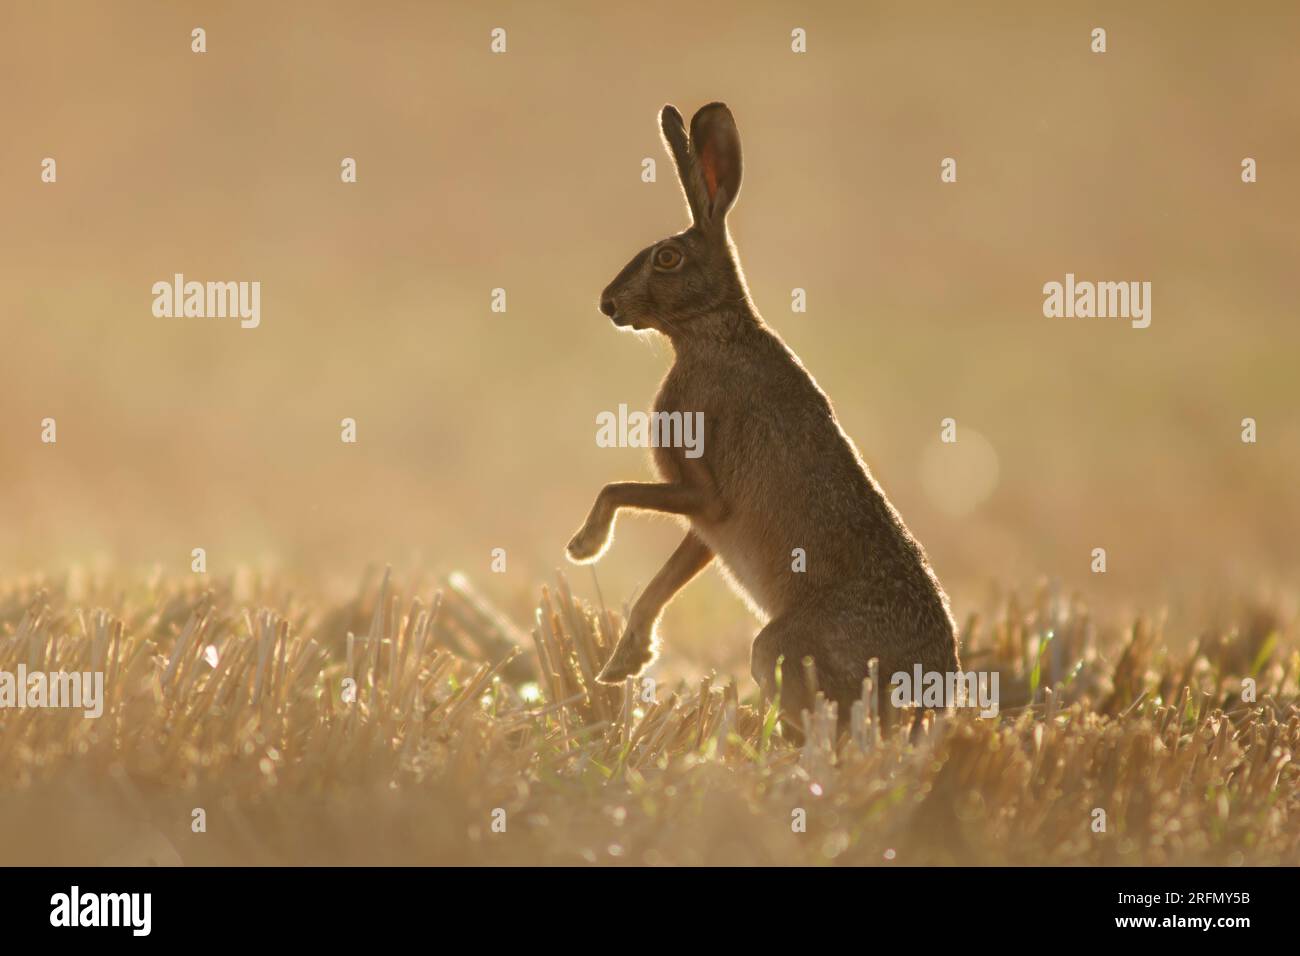 Ein europäischer Hase (Lepus europaeus) steht auf einem geernteten Stoppelfeld im Morgenlicht Stockfoto